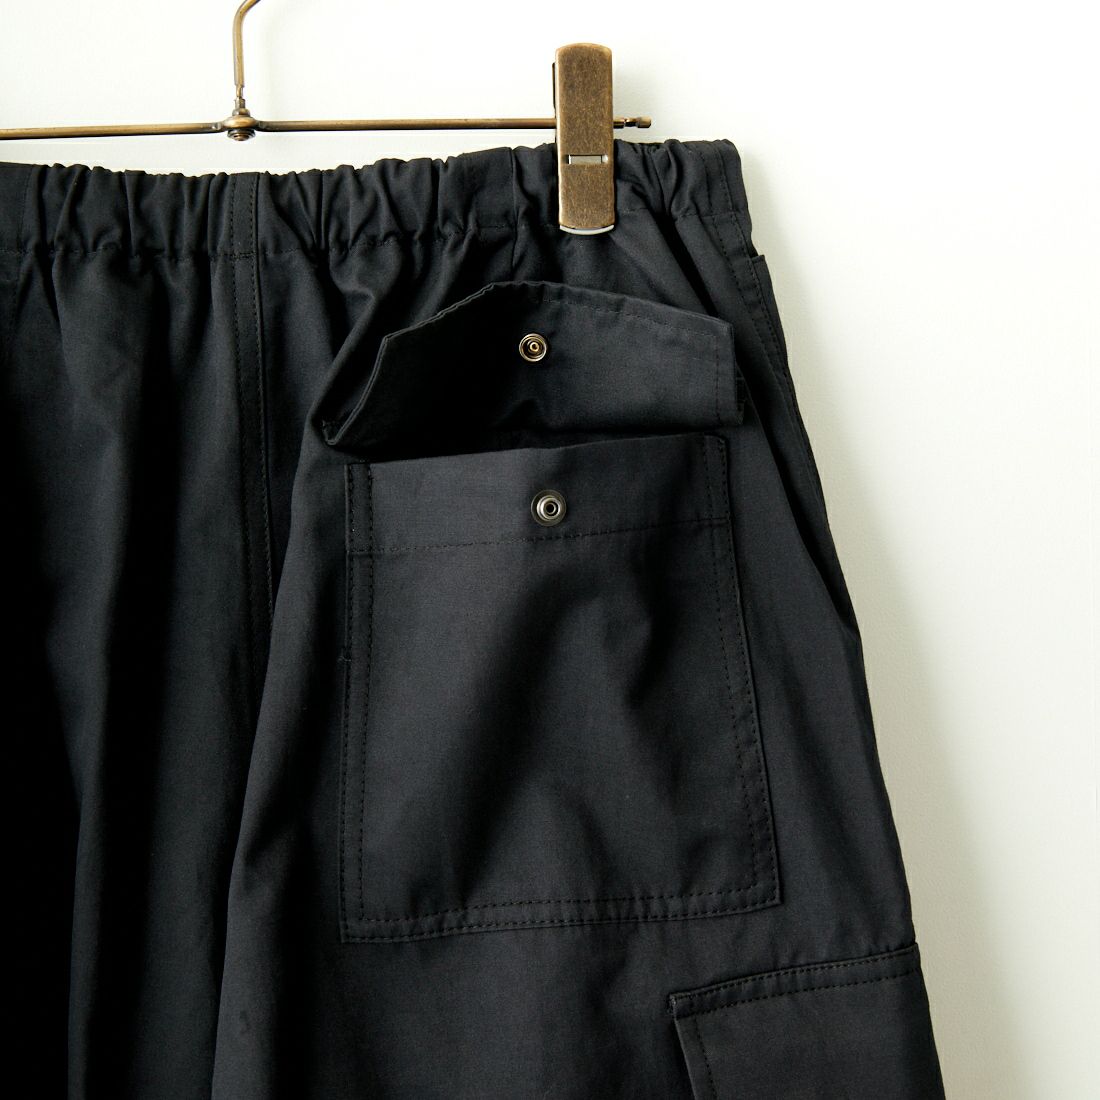 Jeans Factory Clothes [ジーンズファクトリークローズ] ワイドカーゴパンツ [JFC-234-095] BLACK